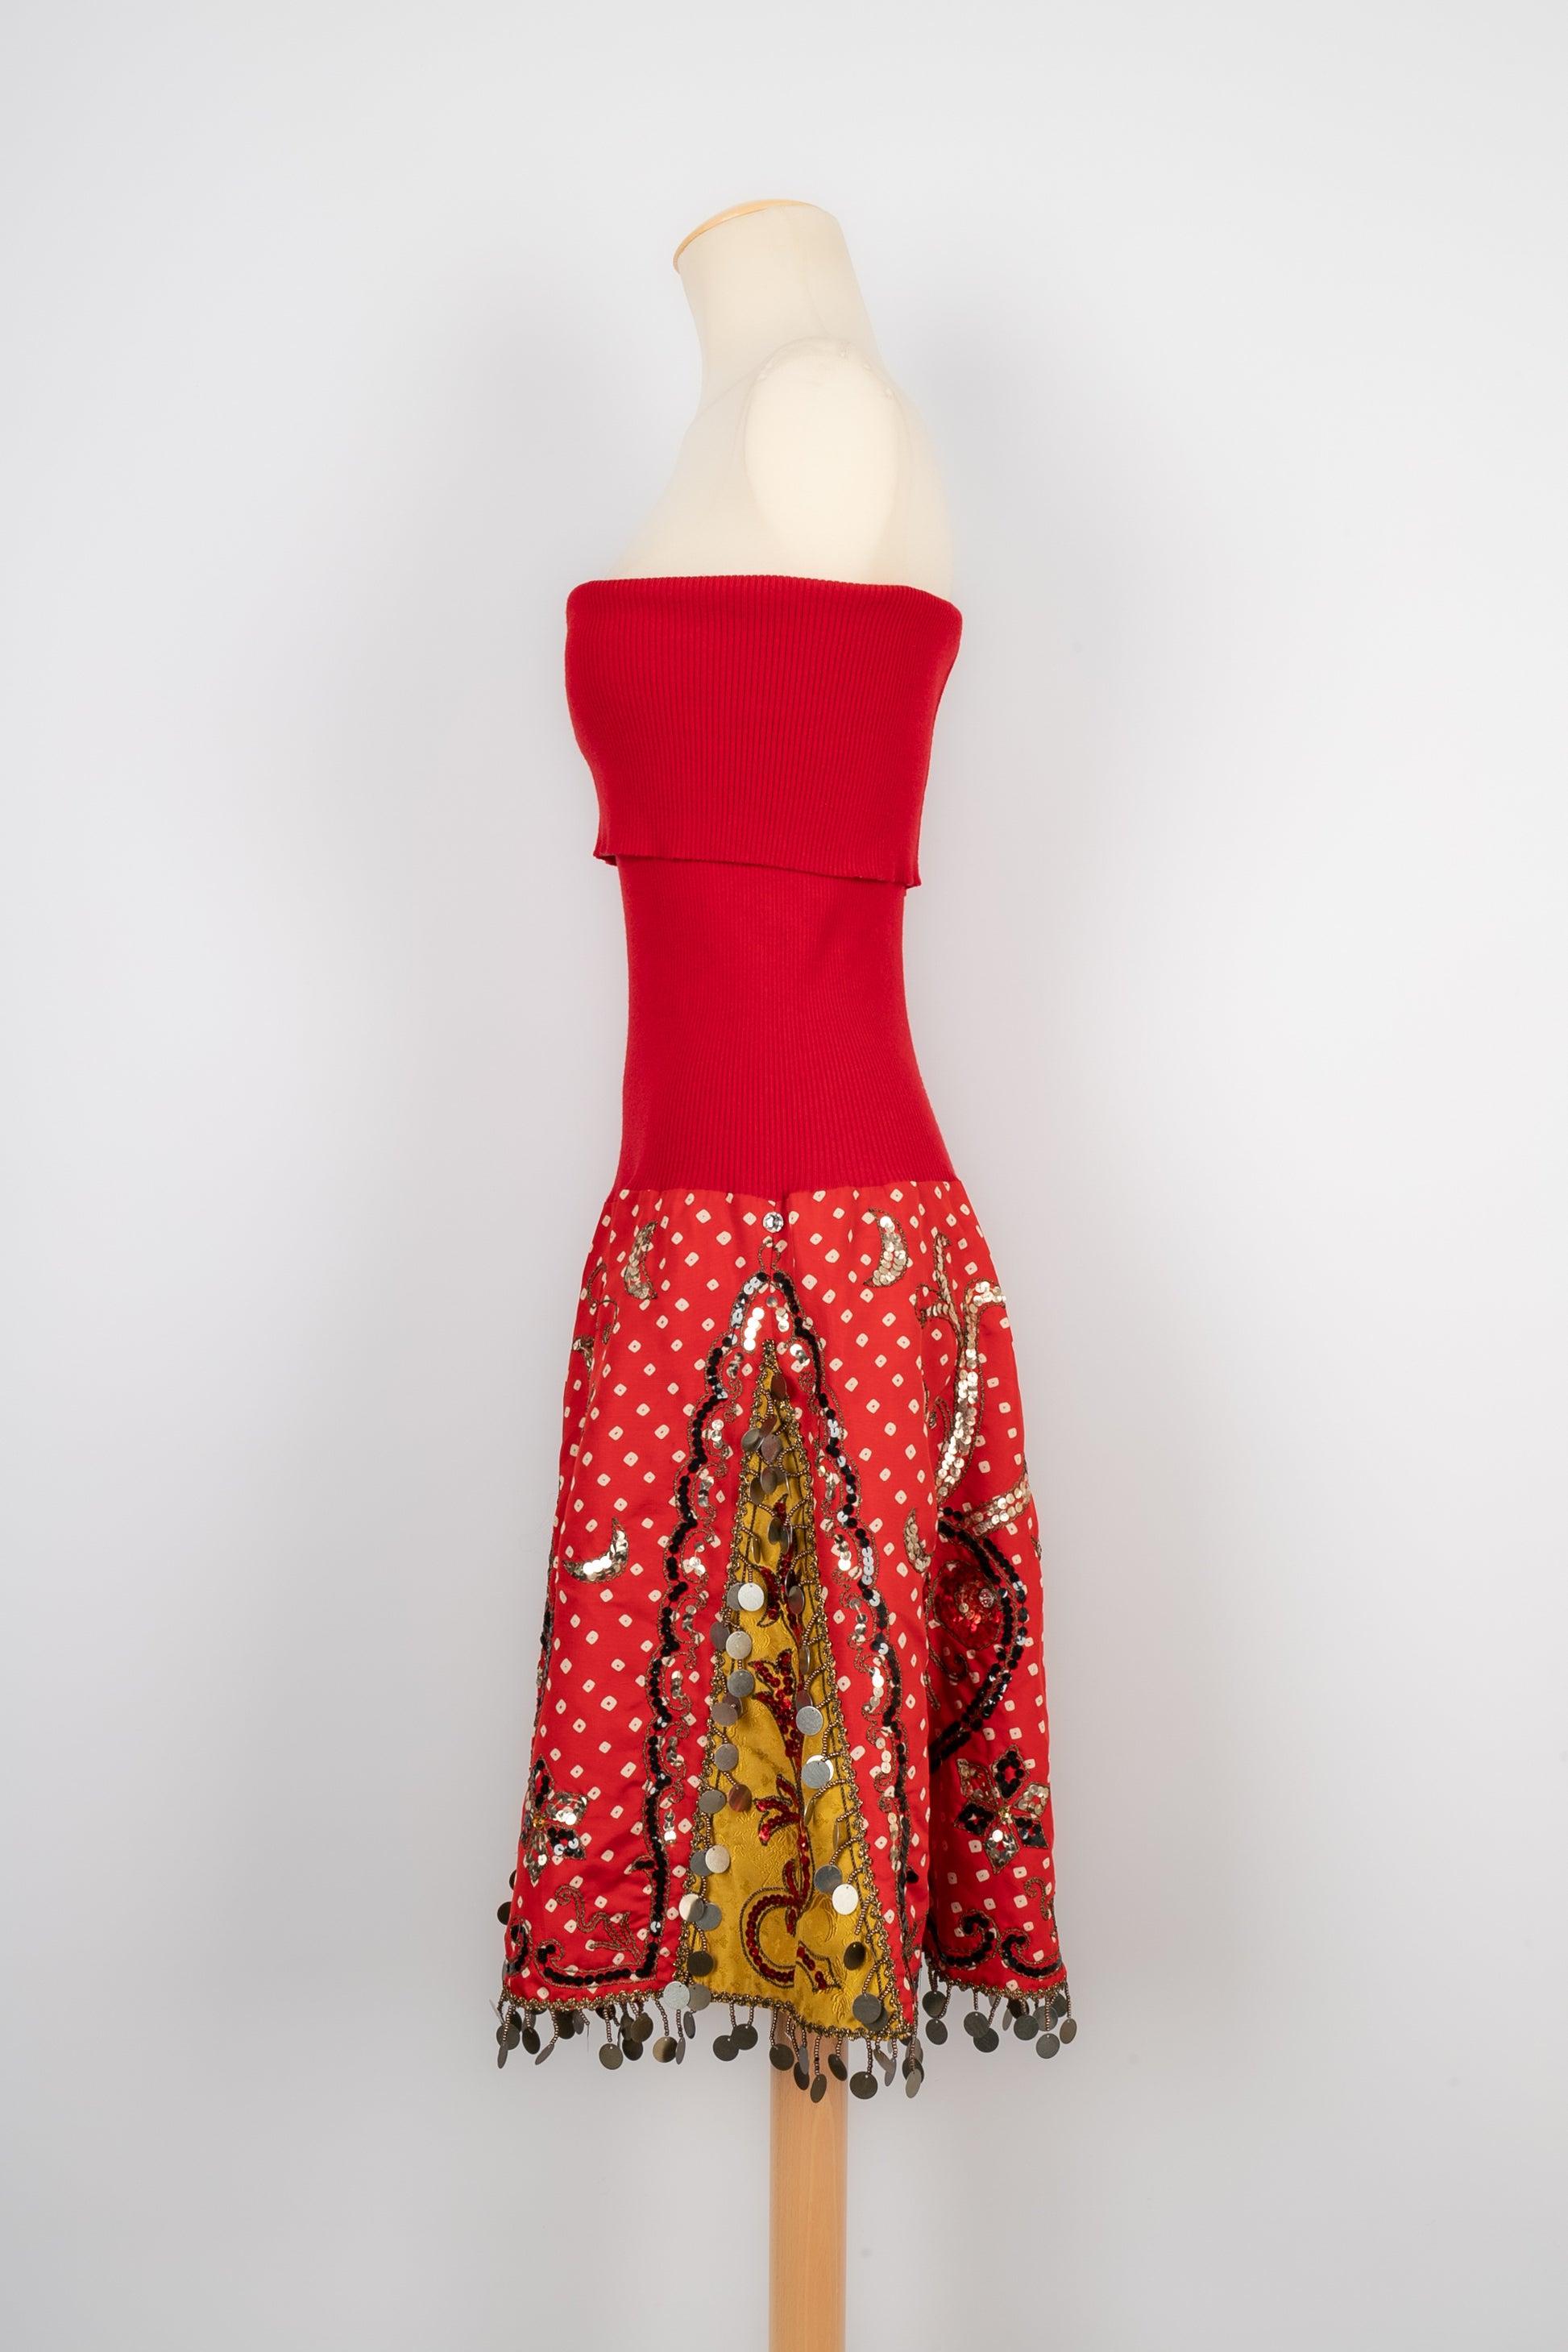 Christian Dior Roter Rock/Kleid aus Mesh und Seide, 2002 im Angebot 1